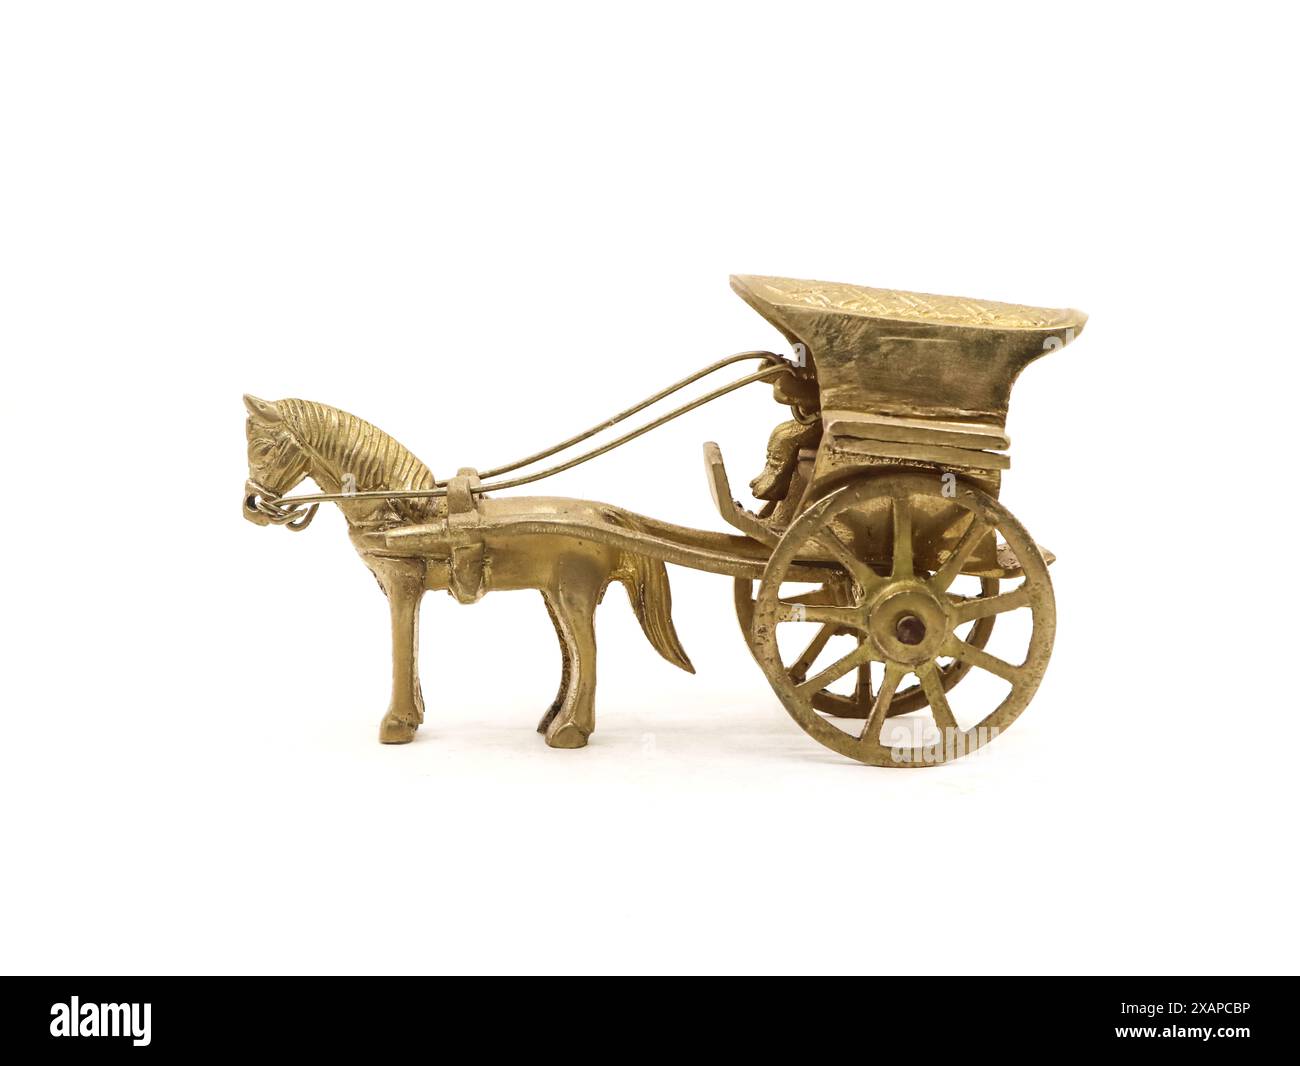 modello antico dettagliato di una carrozza trainata da cavalli utilizzata per il trasporto realizzato e progettato in modo complesso in ottone dorato isolato su un bianco Foto Stock